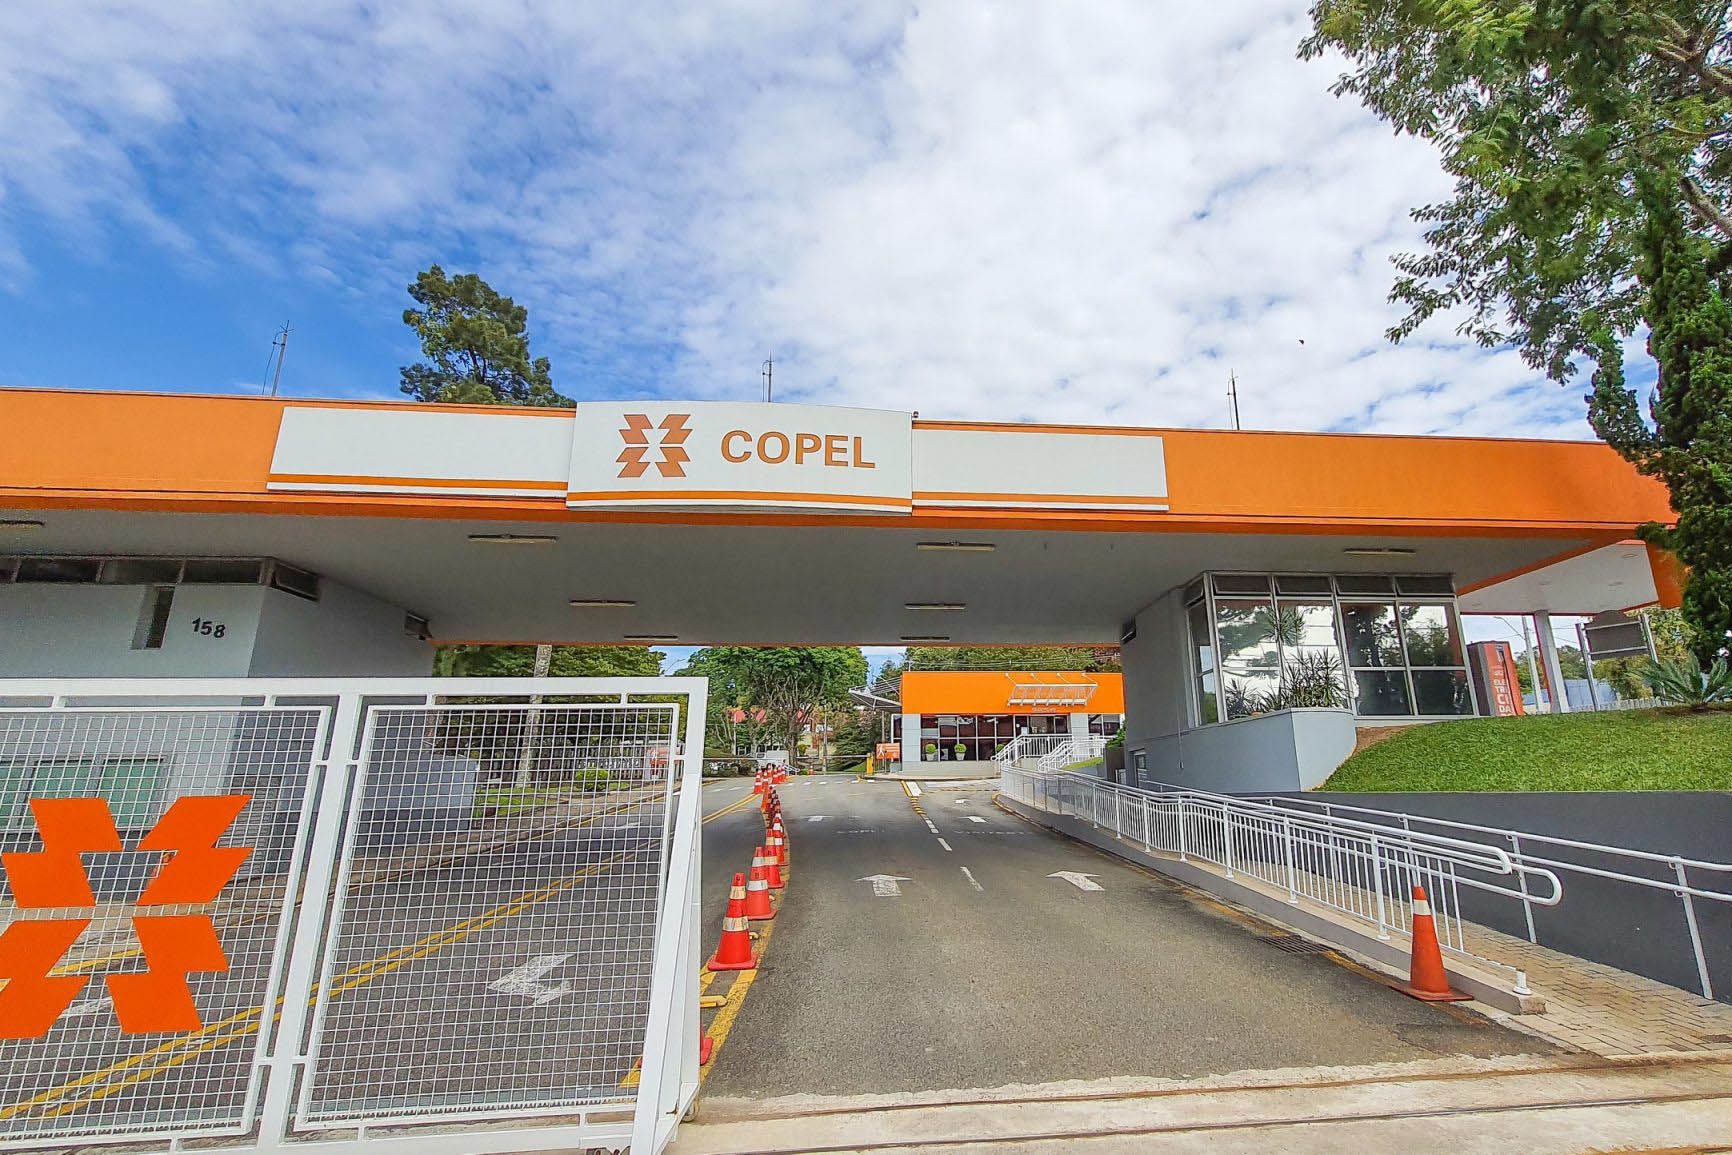 Copel (CPLE6) contrata bancos para estruturar potencial privatização